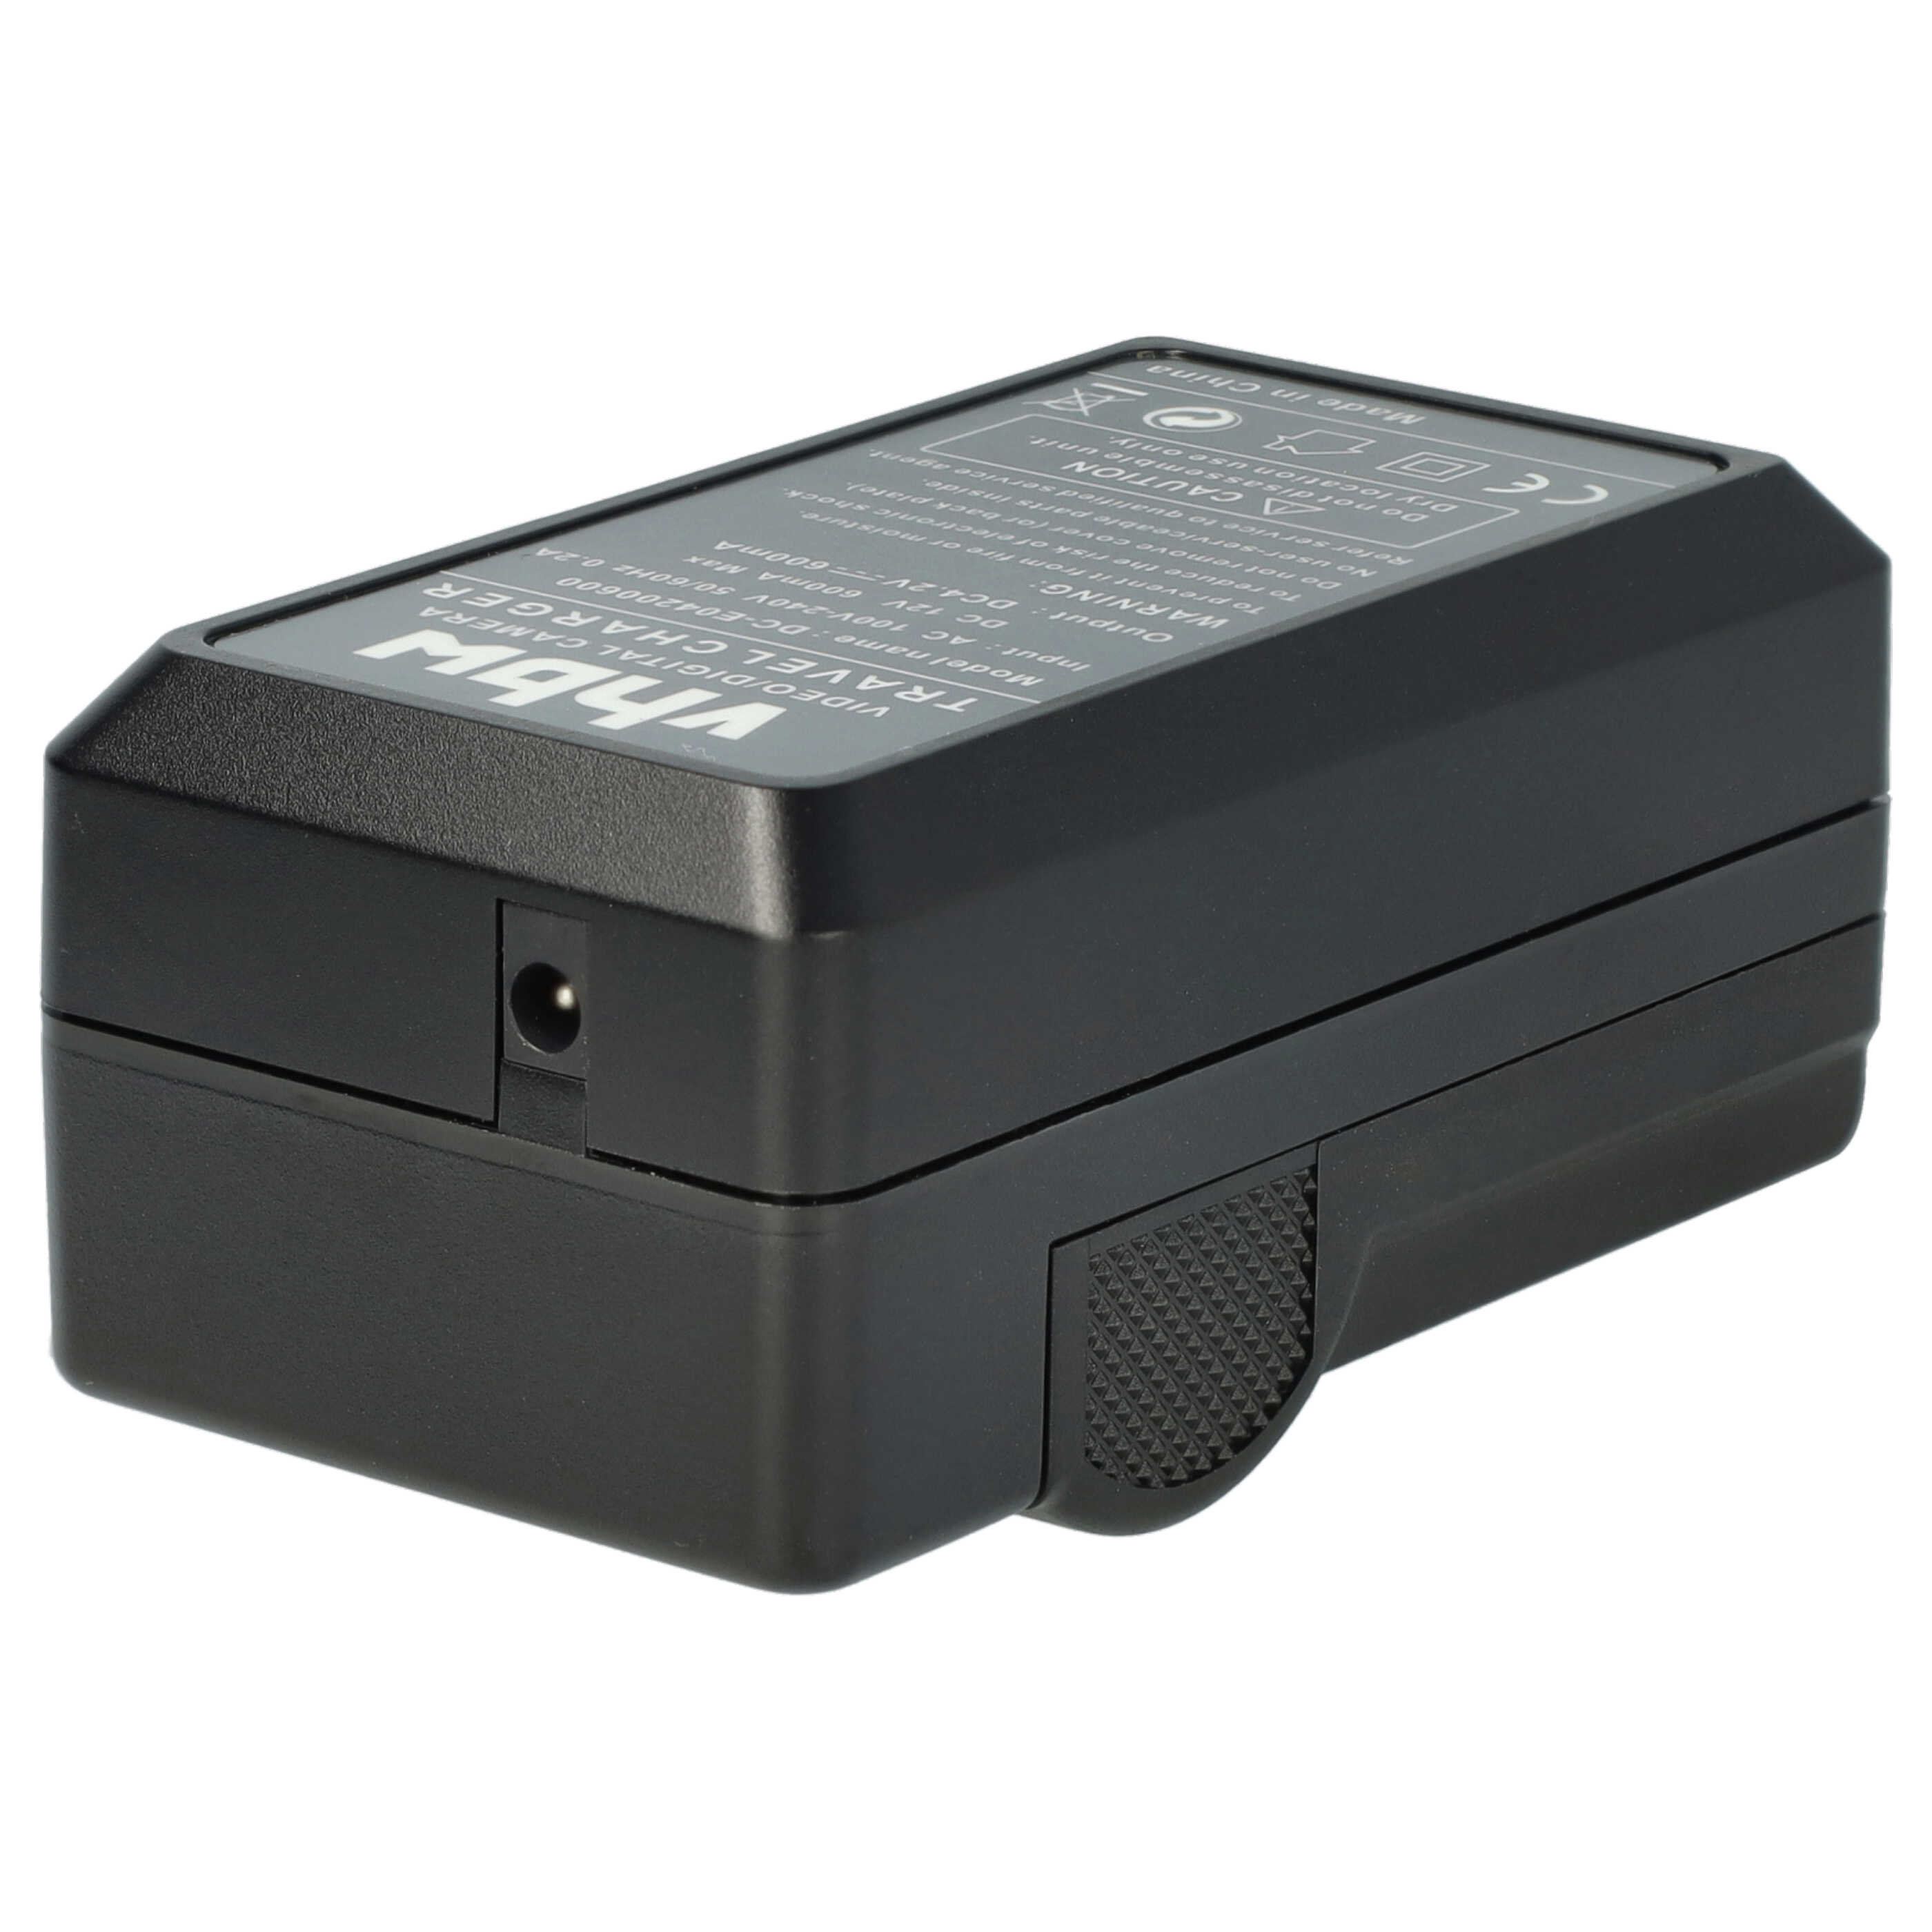 Akku Ladegerät passend für Ricoh DB-65 Kamera u.a. - 0,6 A, 4,2 V